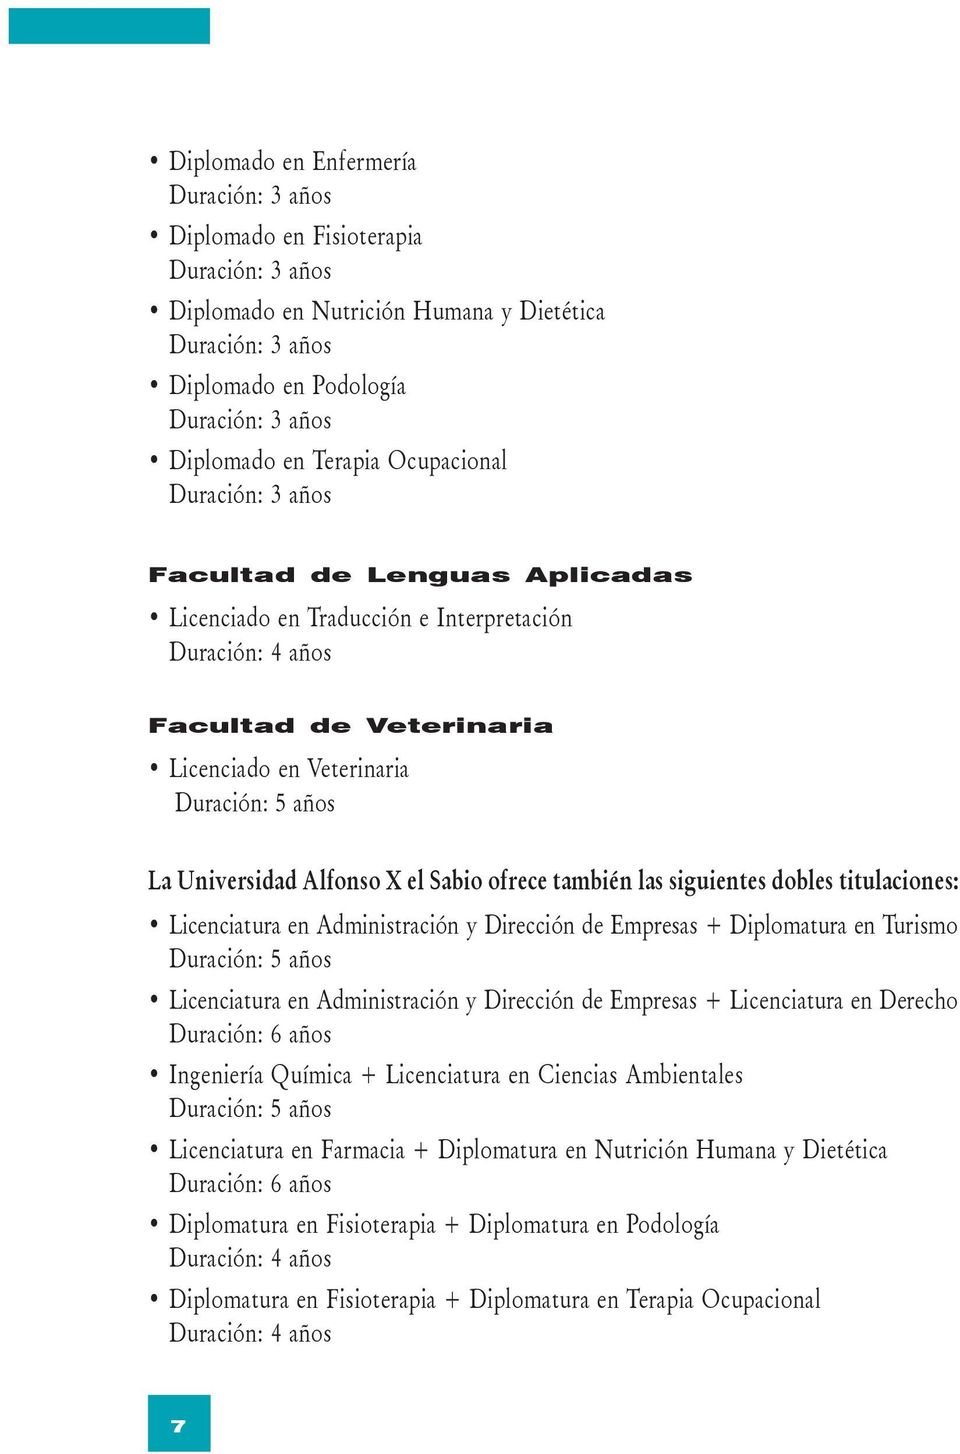 Universidad Alfonso X el Sabio ofrece también las siguientes dobles titulaciones: Licenciatura en Administración y Dirección de Empresas + Diplomatura en Turismo Duración: 5 años Licenciatura en